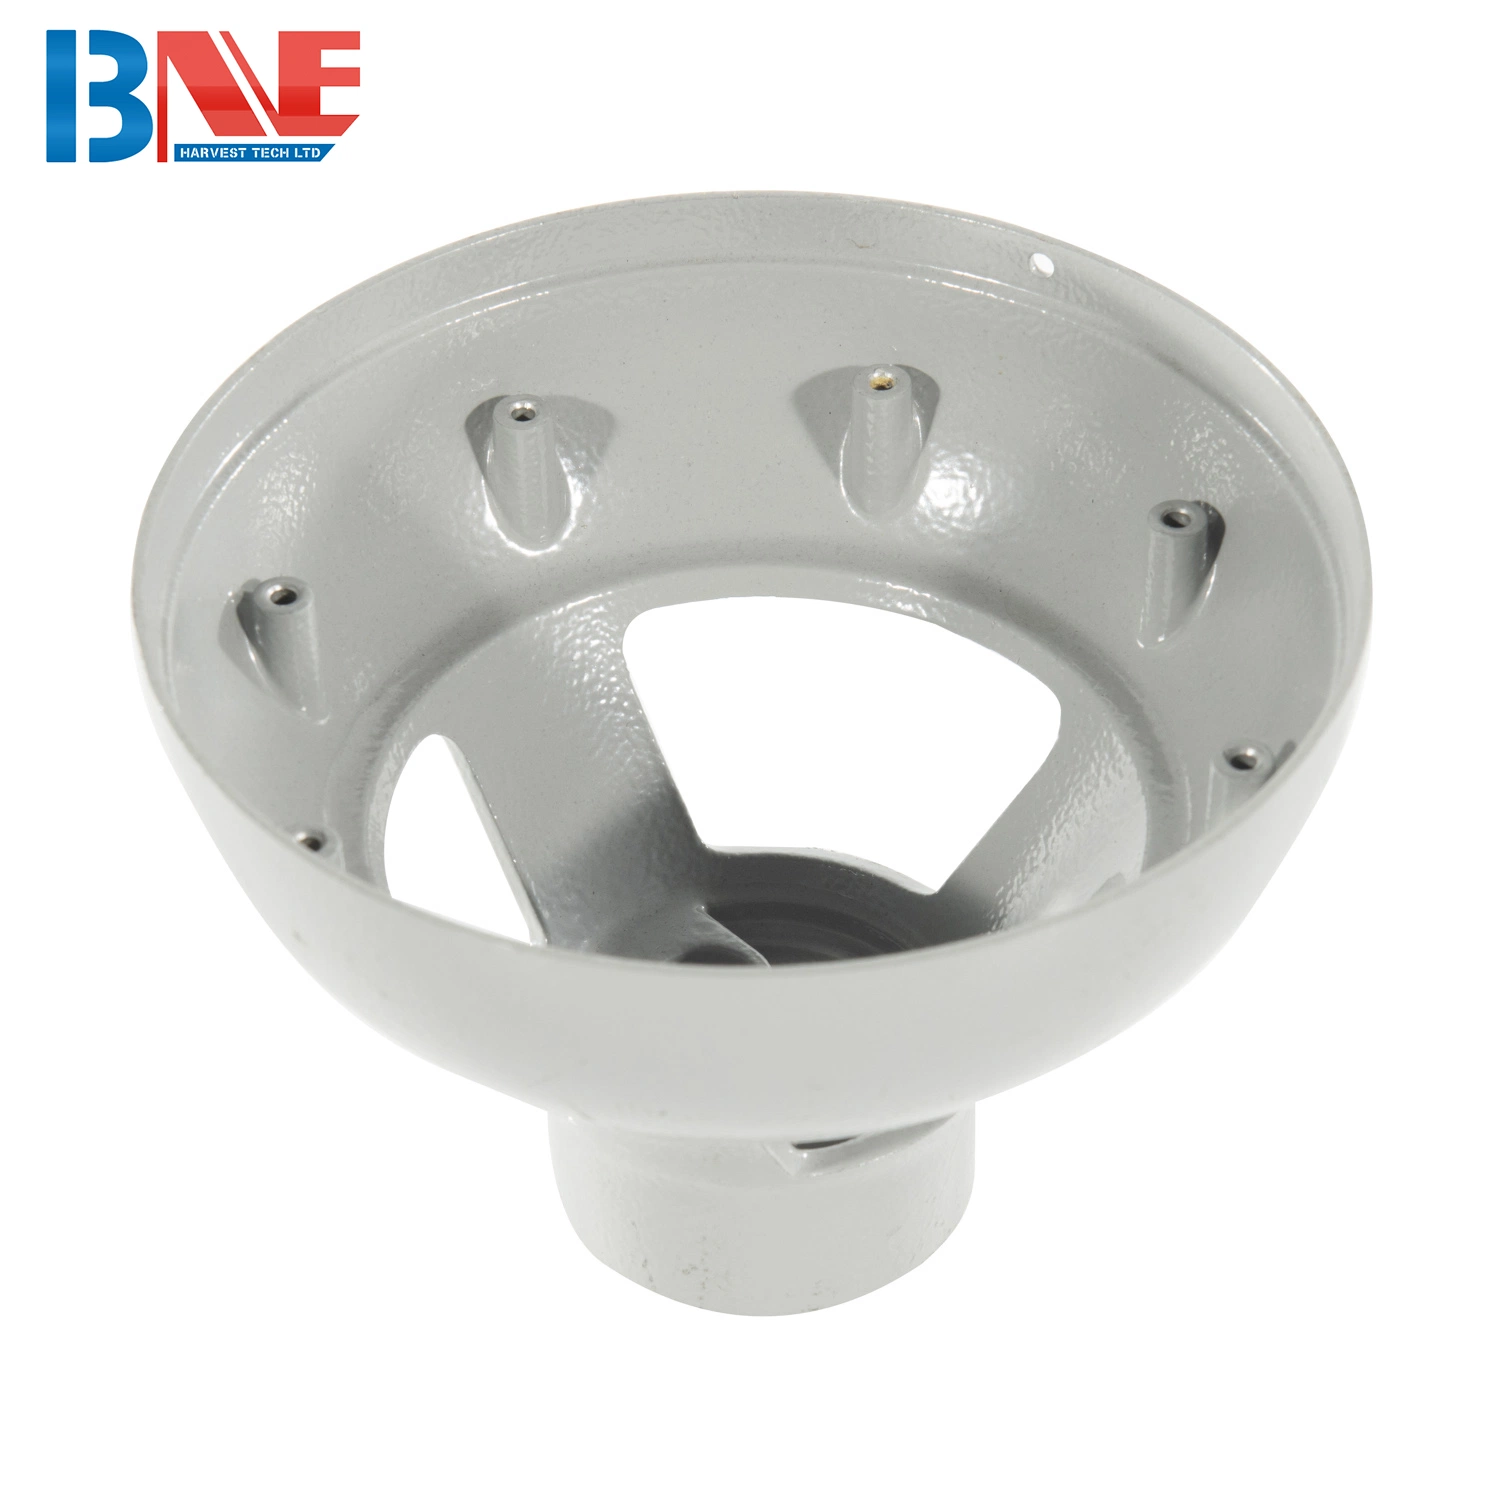 Pieza moldeado a presión de aleación de aluminio de alta precisión personalizada para LED Carcasa de iluminación